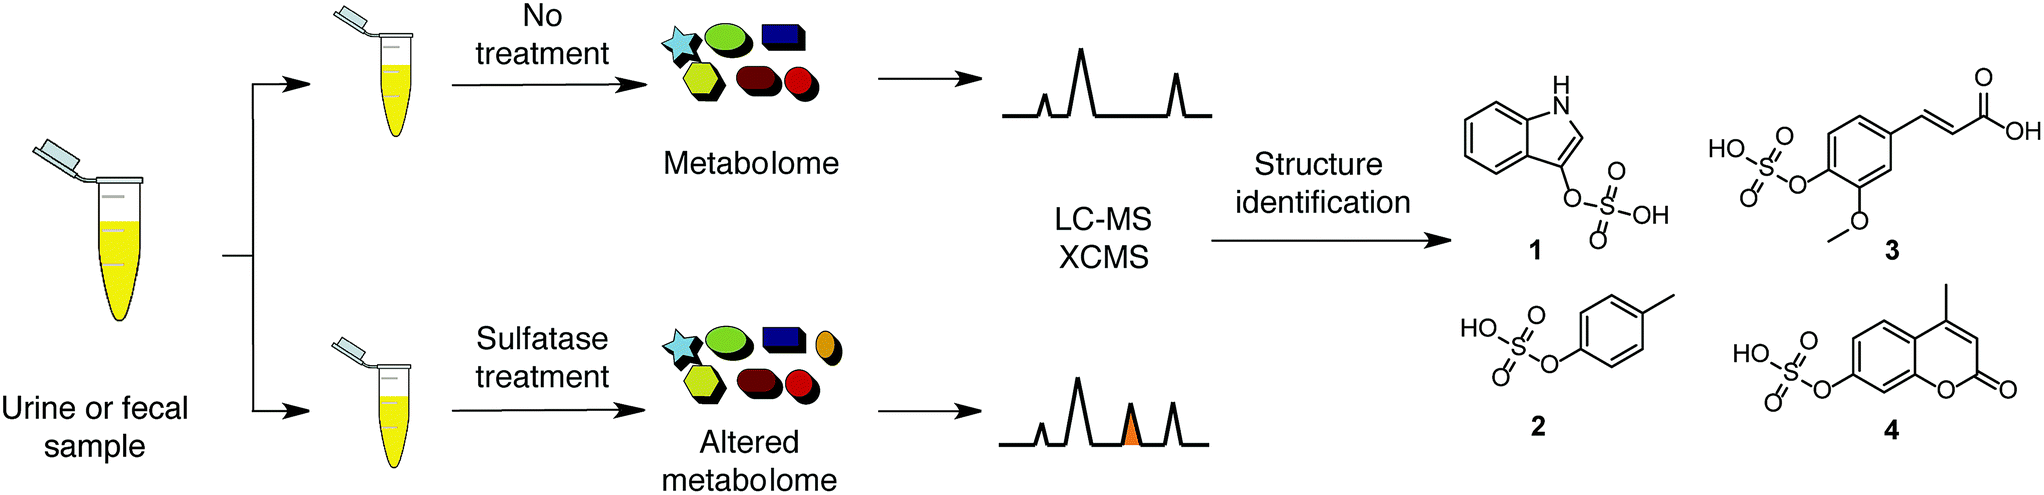 使用硫酸酯酶-硫酸酯酶处理和UPLC-MS/MS可以选择性地分析O-硫酸酯酶功能化分子。